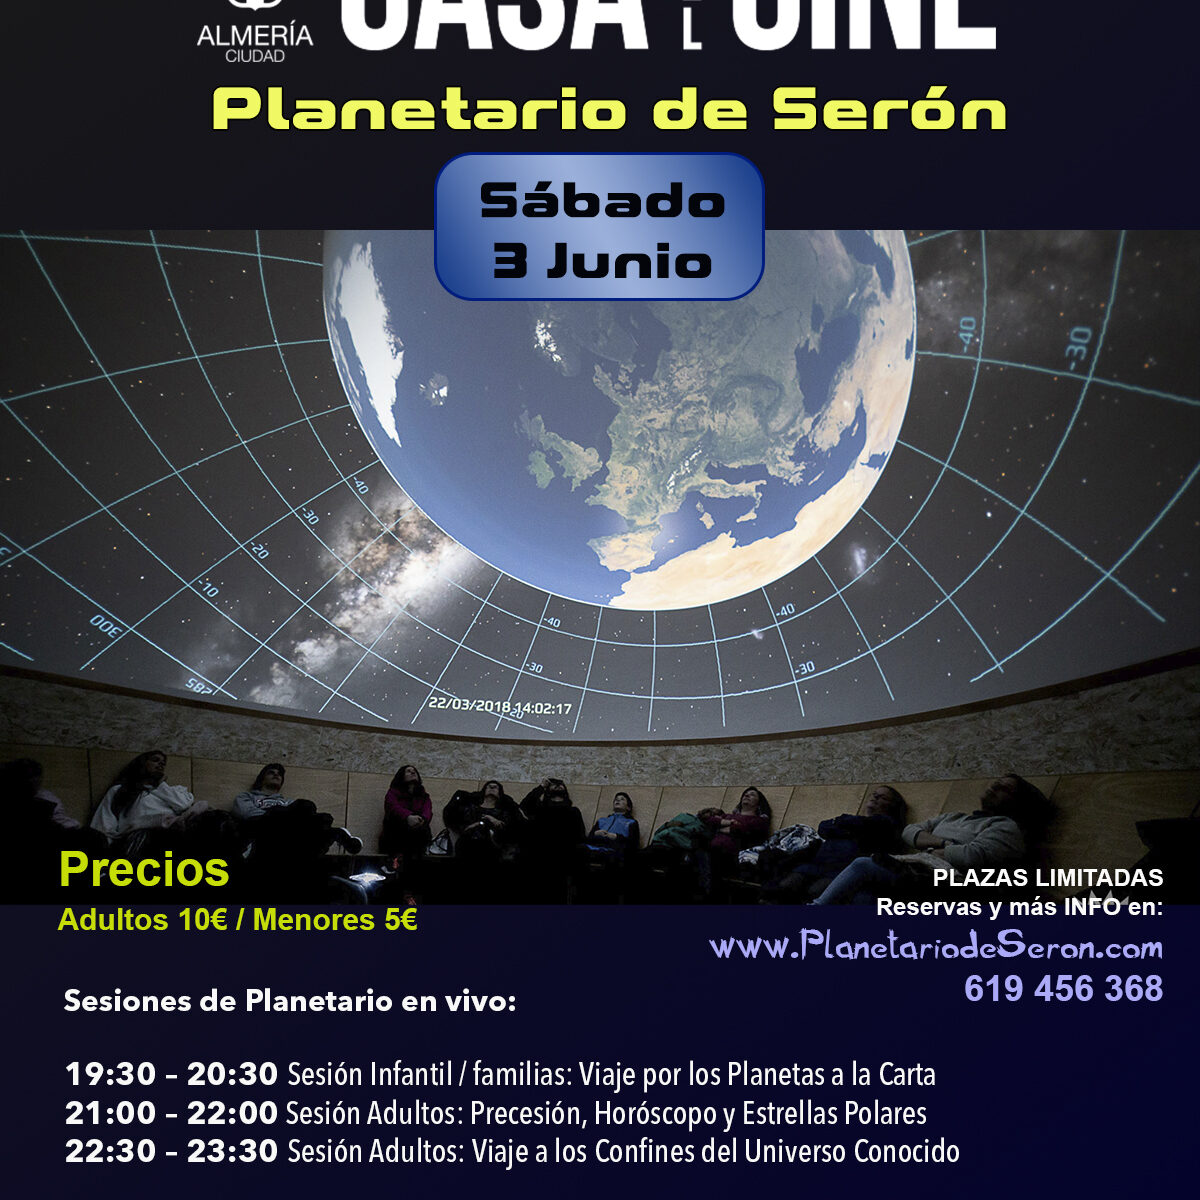 Planetario de Seron - Casa del Cine Almeria